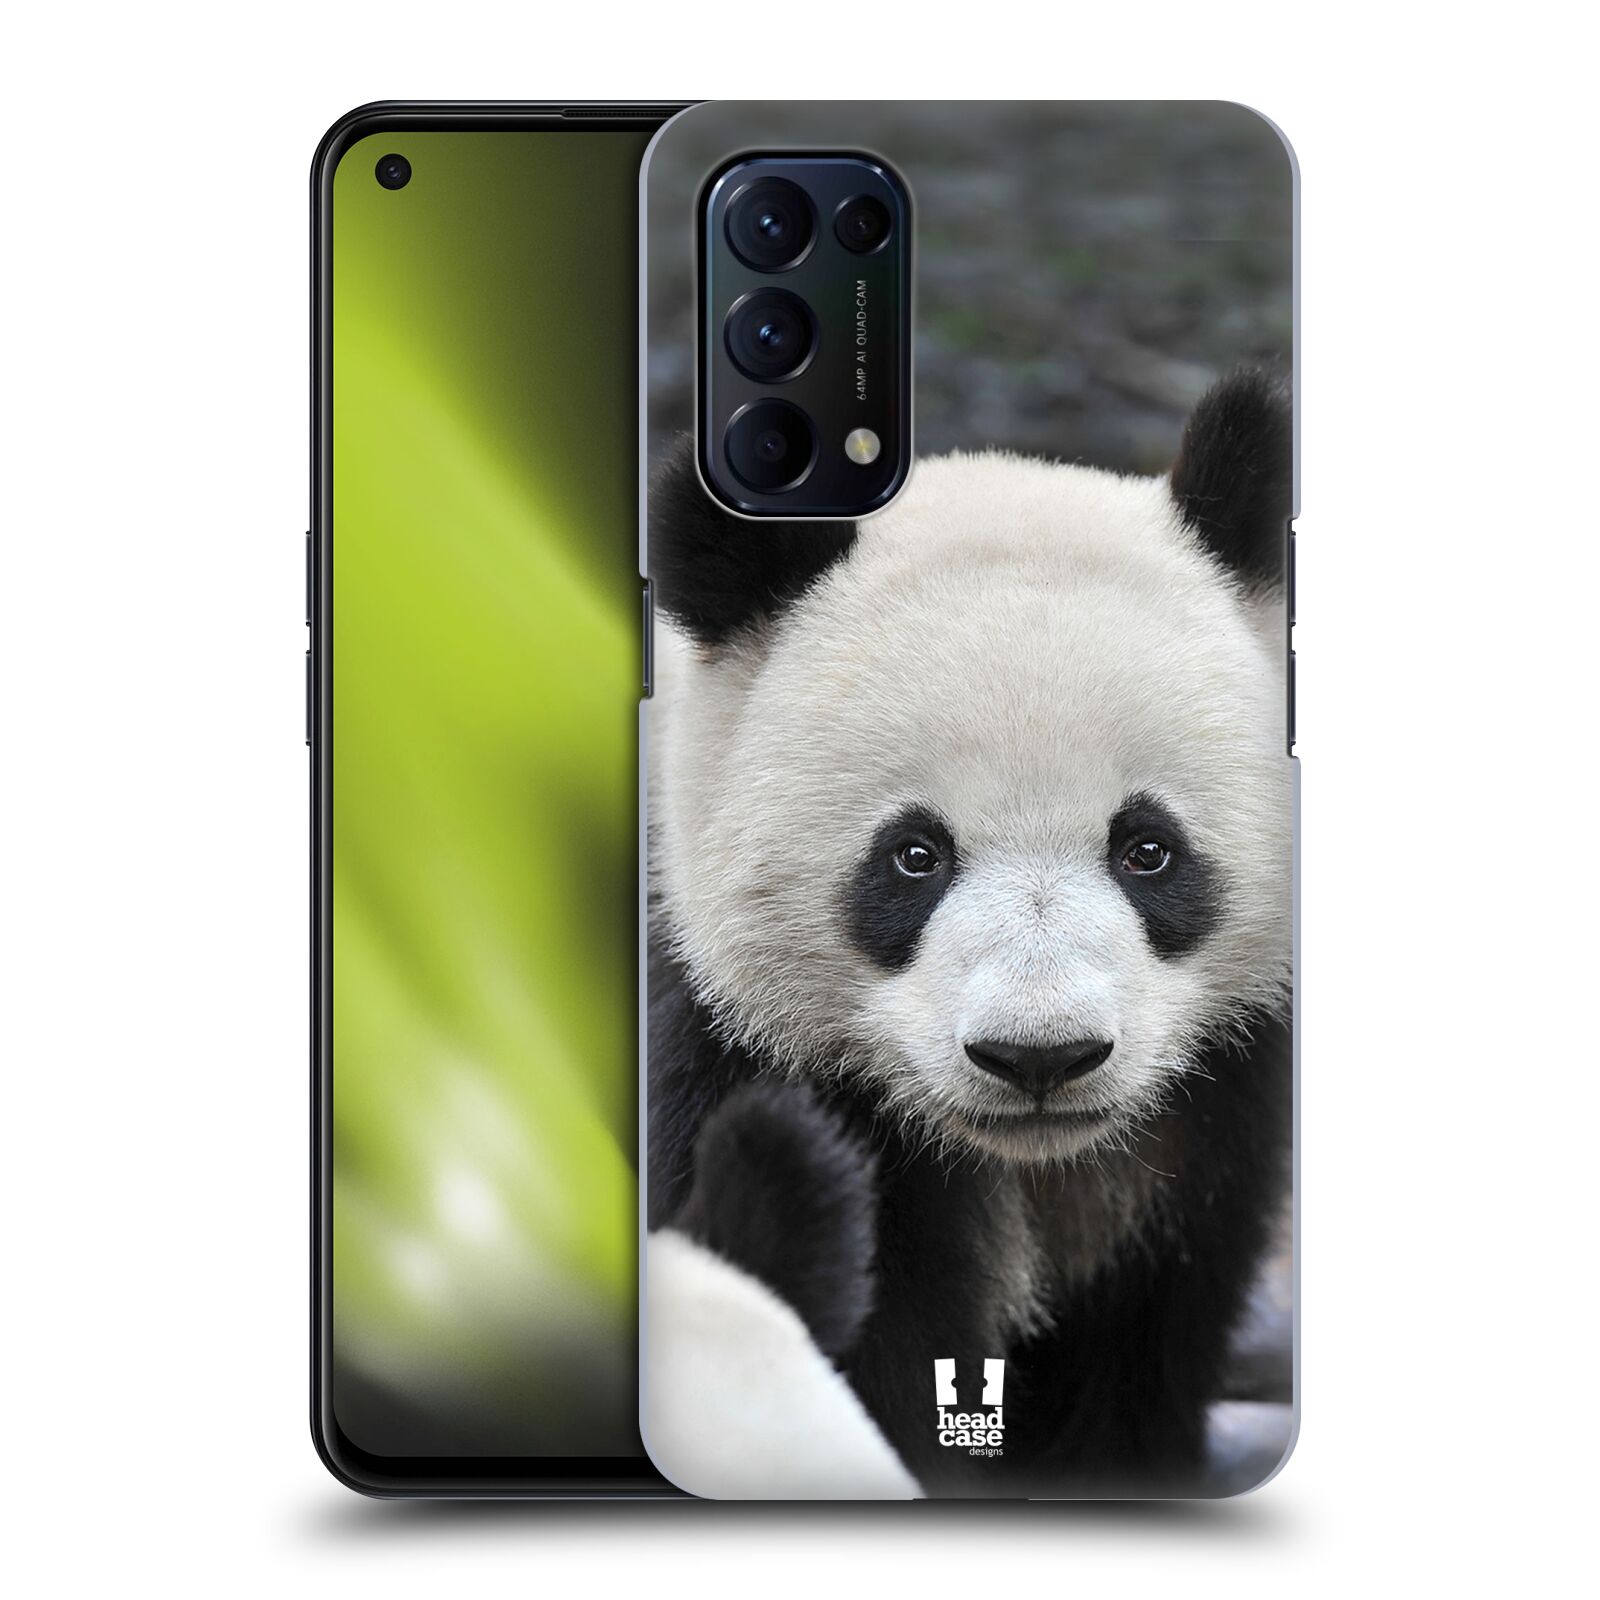 Zadní obal pro mobil Oppo Reno 5 (5G) - HEAD CASE - Svět zvířat medvěd panda